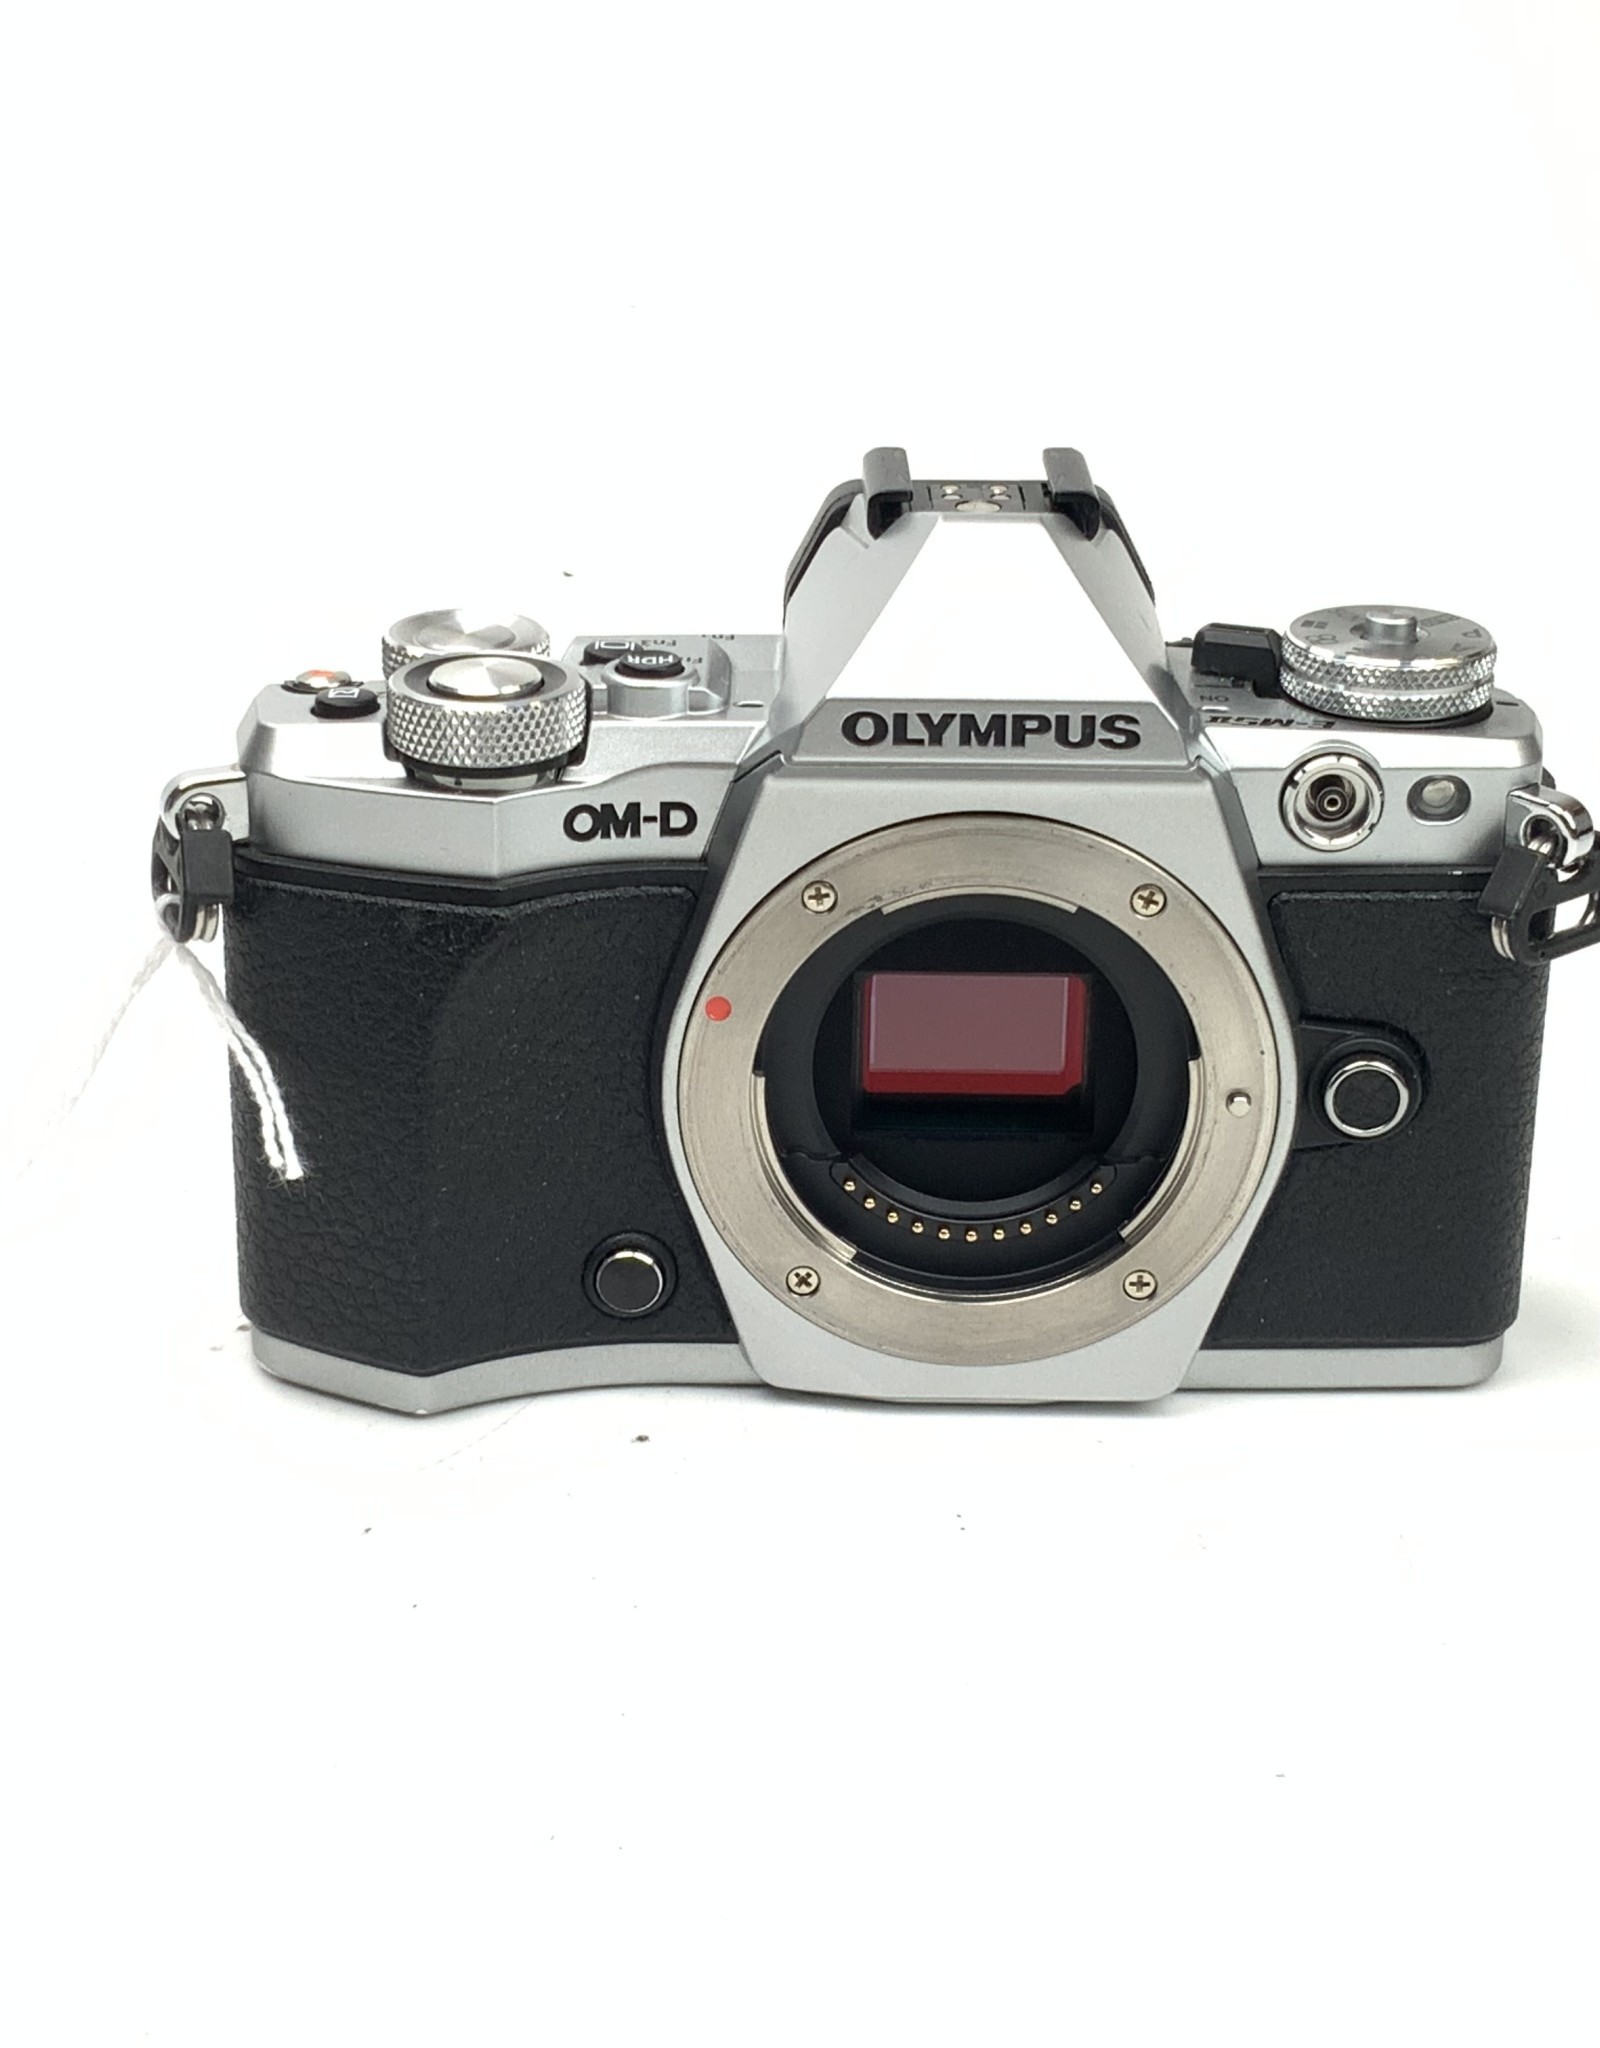 OLYMPUS Olympus OM-D E-M5 Mark II Silver Camera Used Good